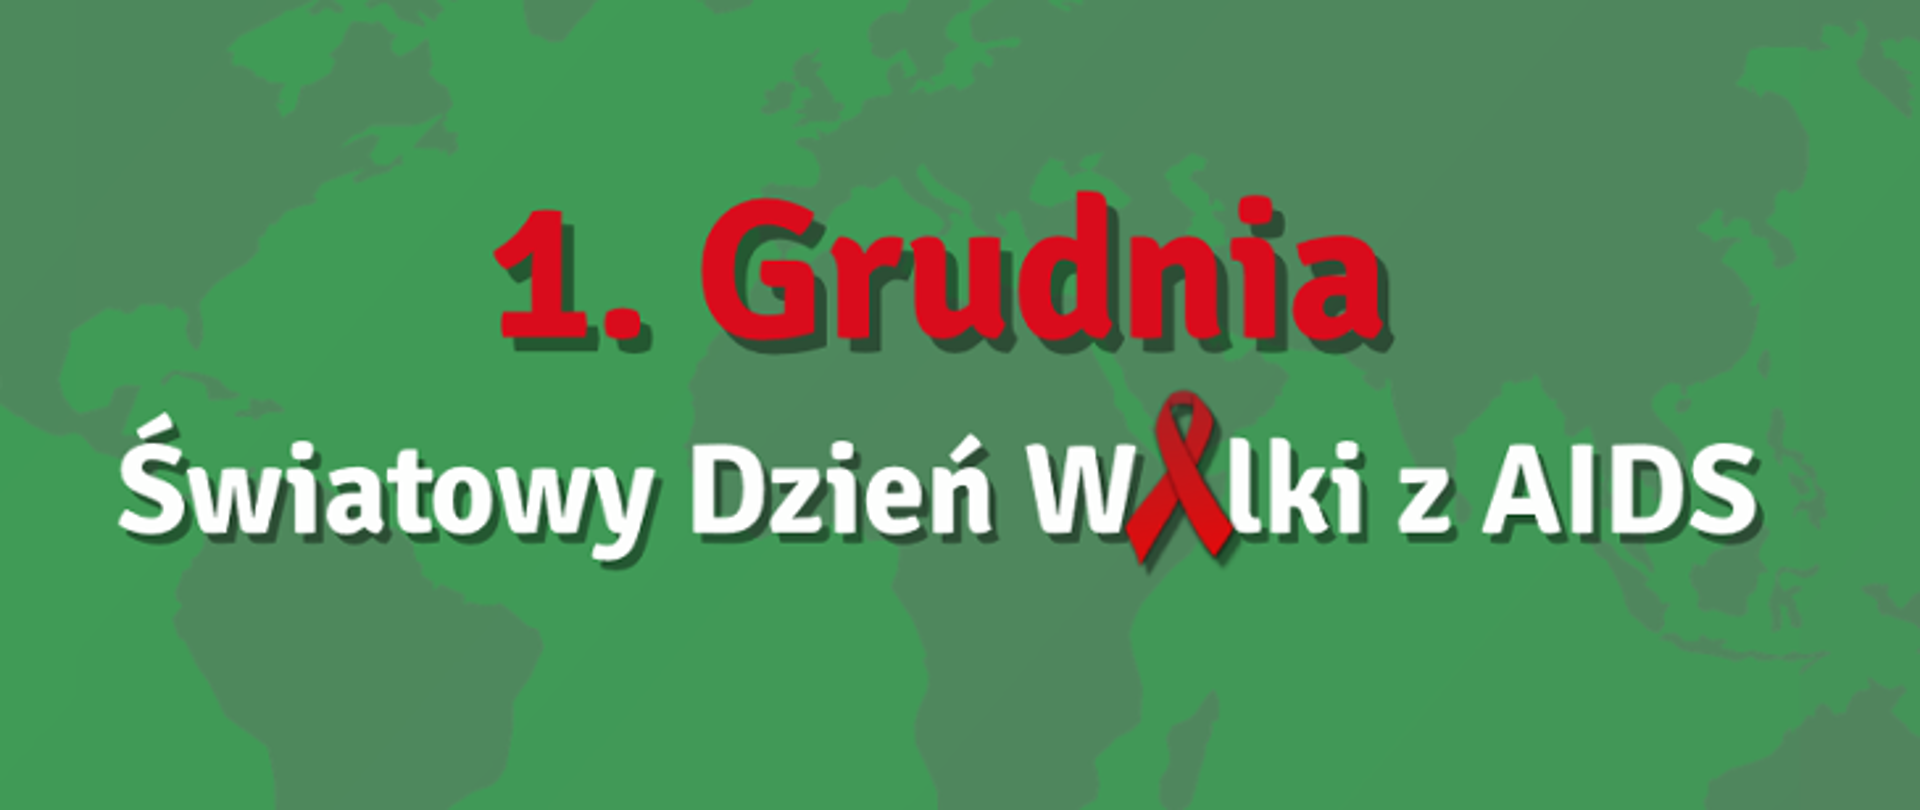 Światowy Dzień Walki z AIDS 21